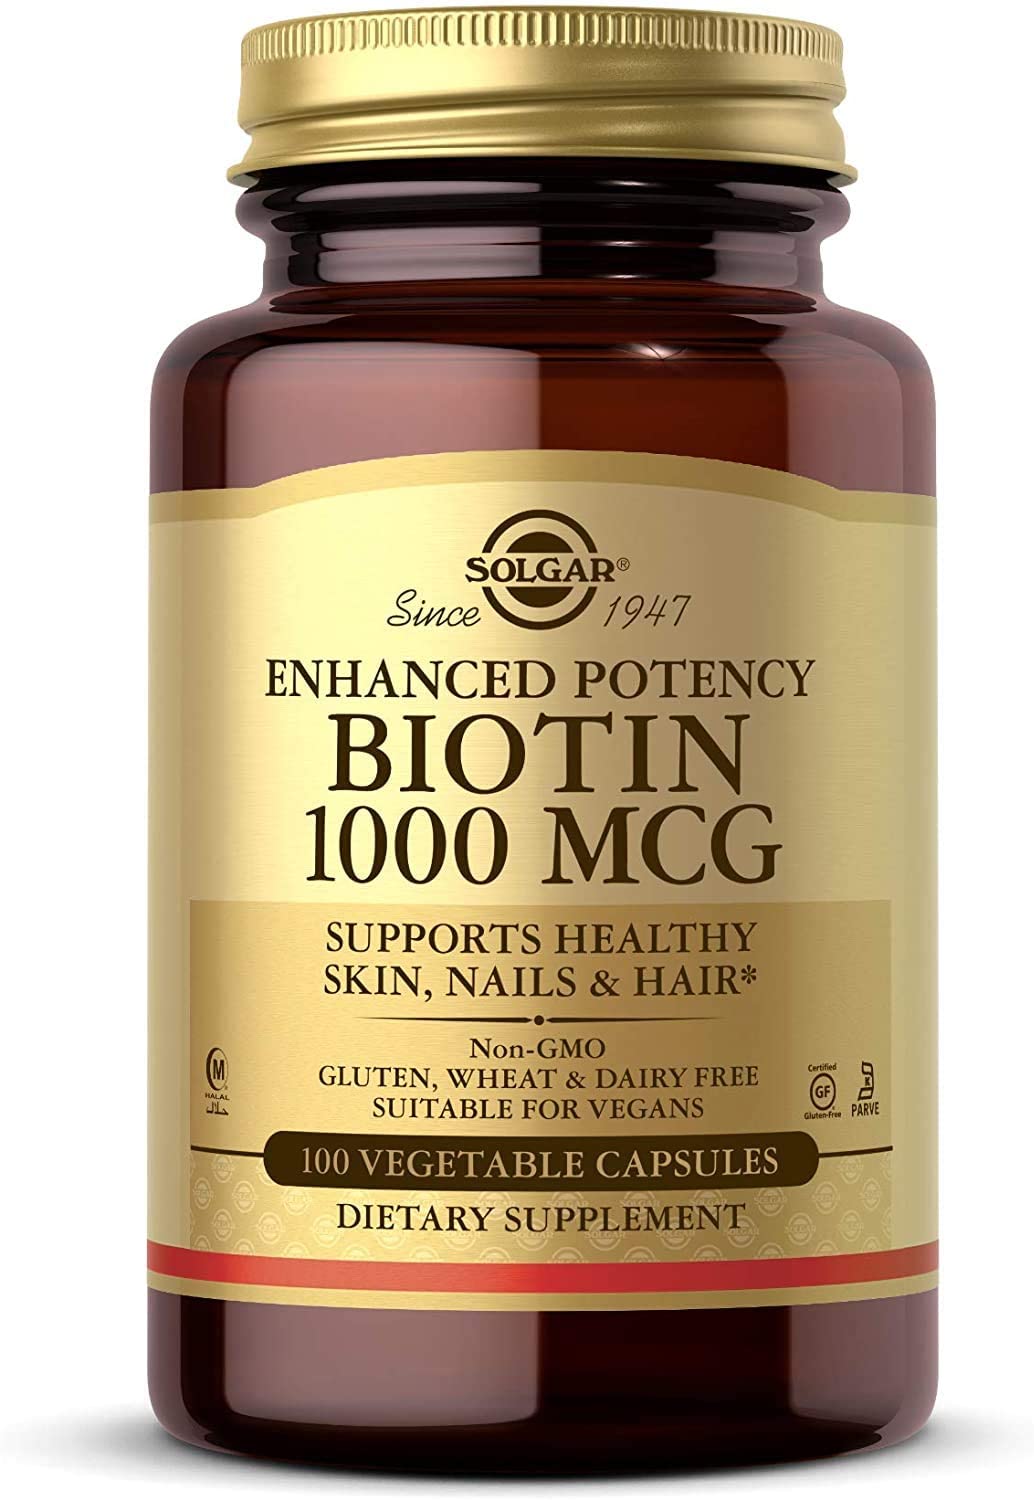 Solgar Enhanced Potency Biotin 1000 Mcg, 100 Vegetable Capsules